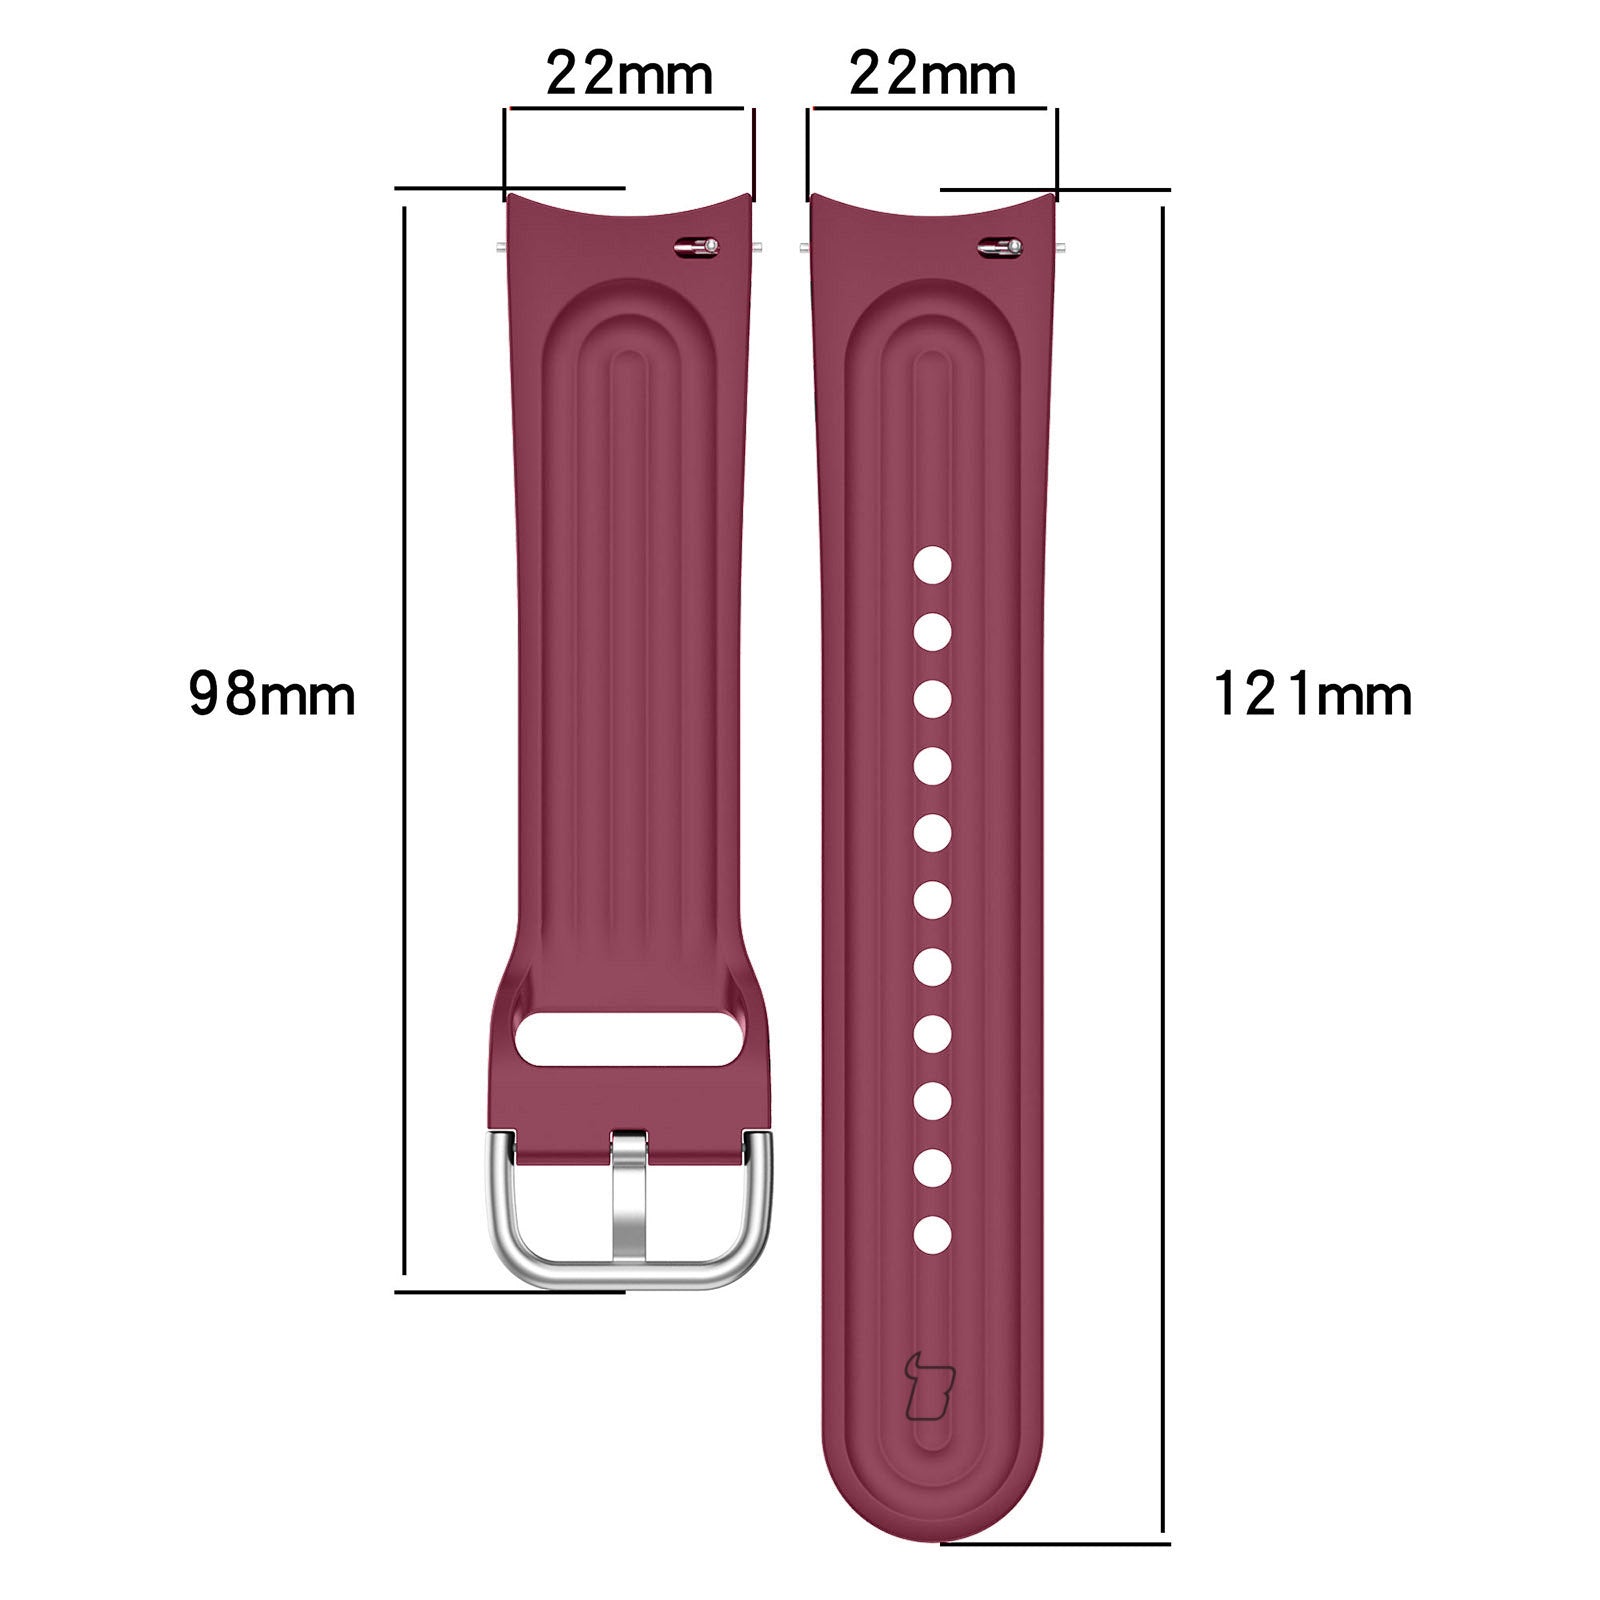 Armband Bizon Strap Watch Silicone Pro für Xiaomi Watch S1 Pro, Dunkelviolett